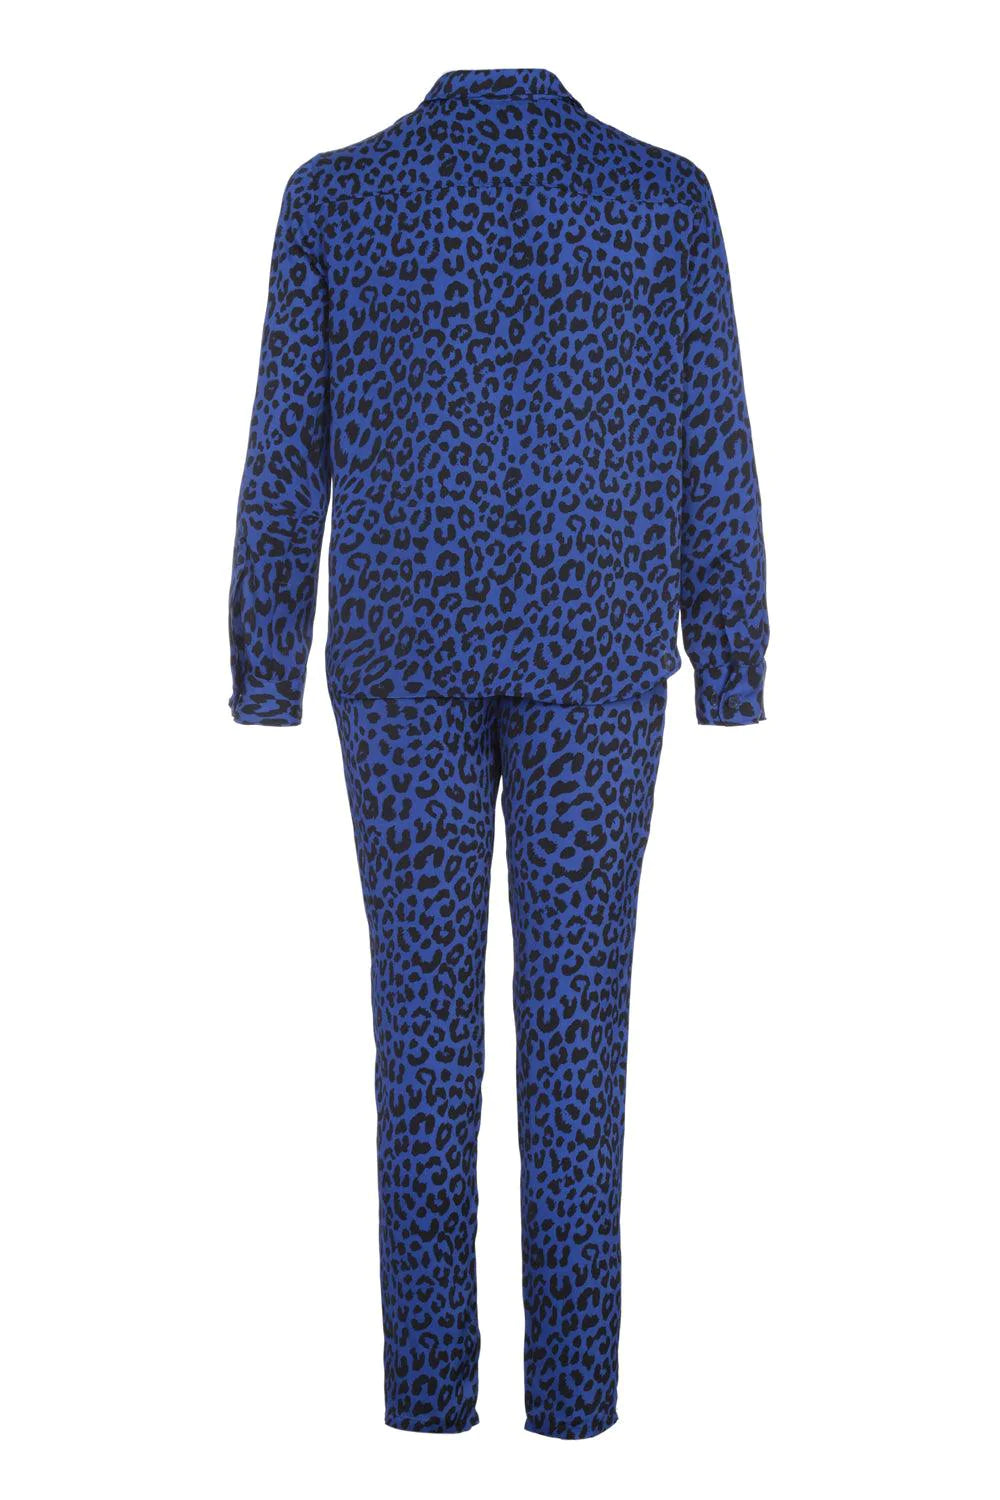 BOUBOU l Blue cheetah pants for Men